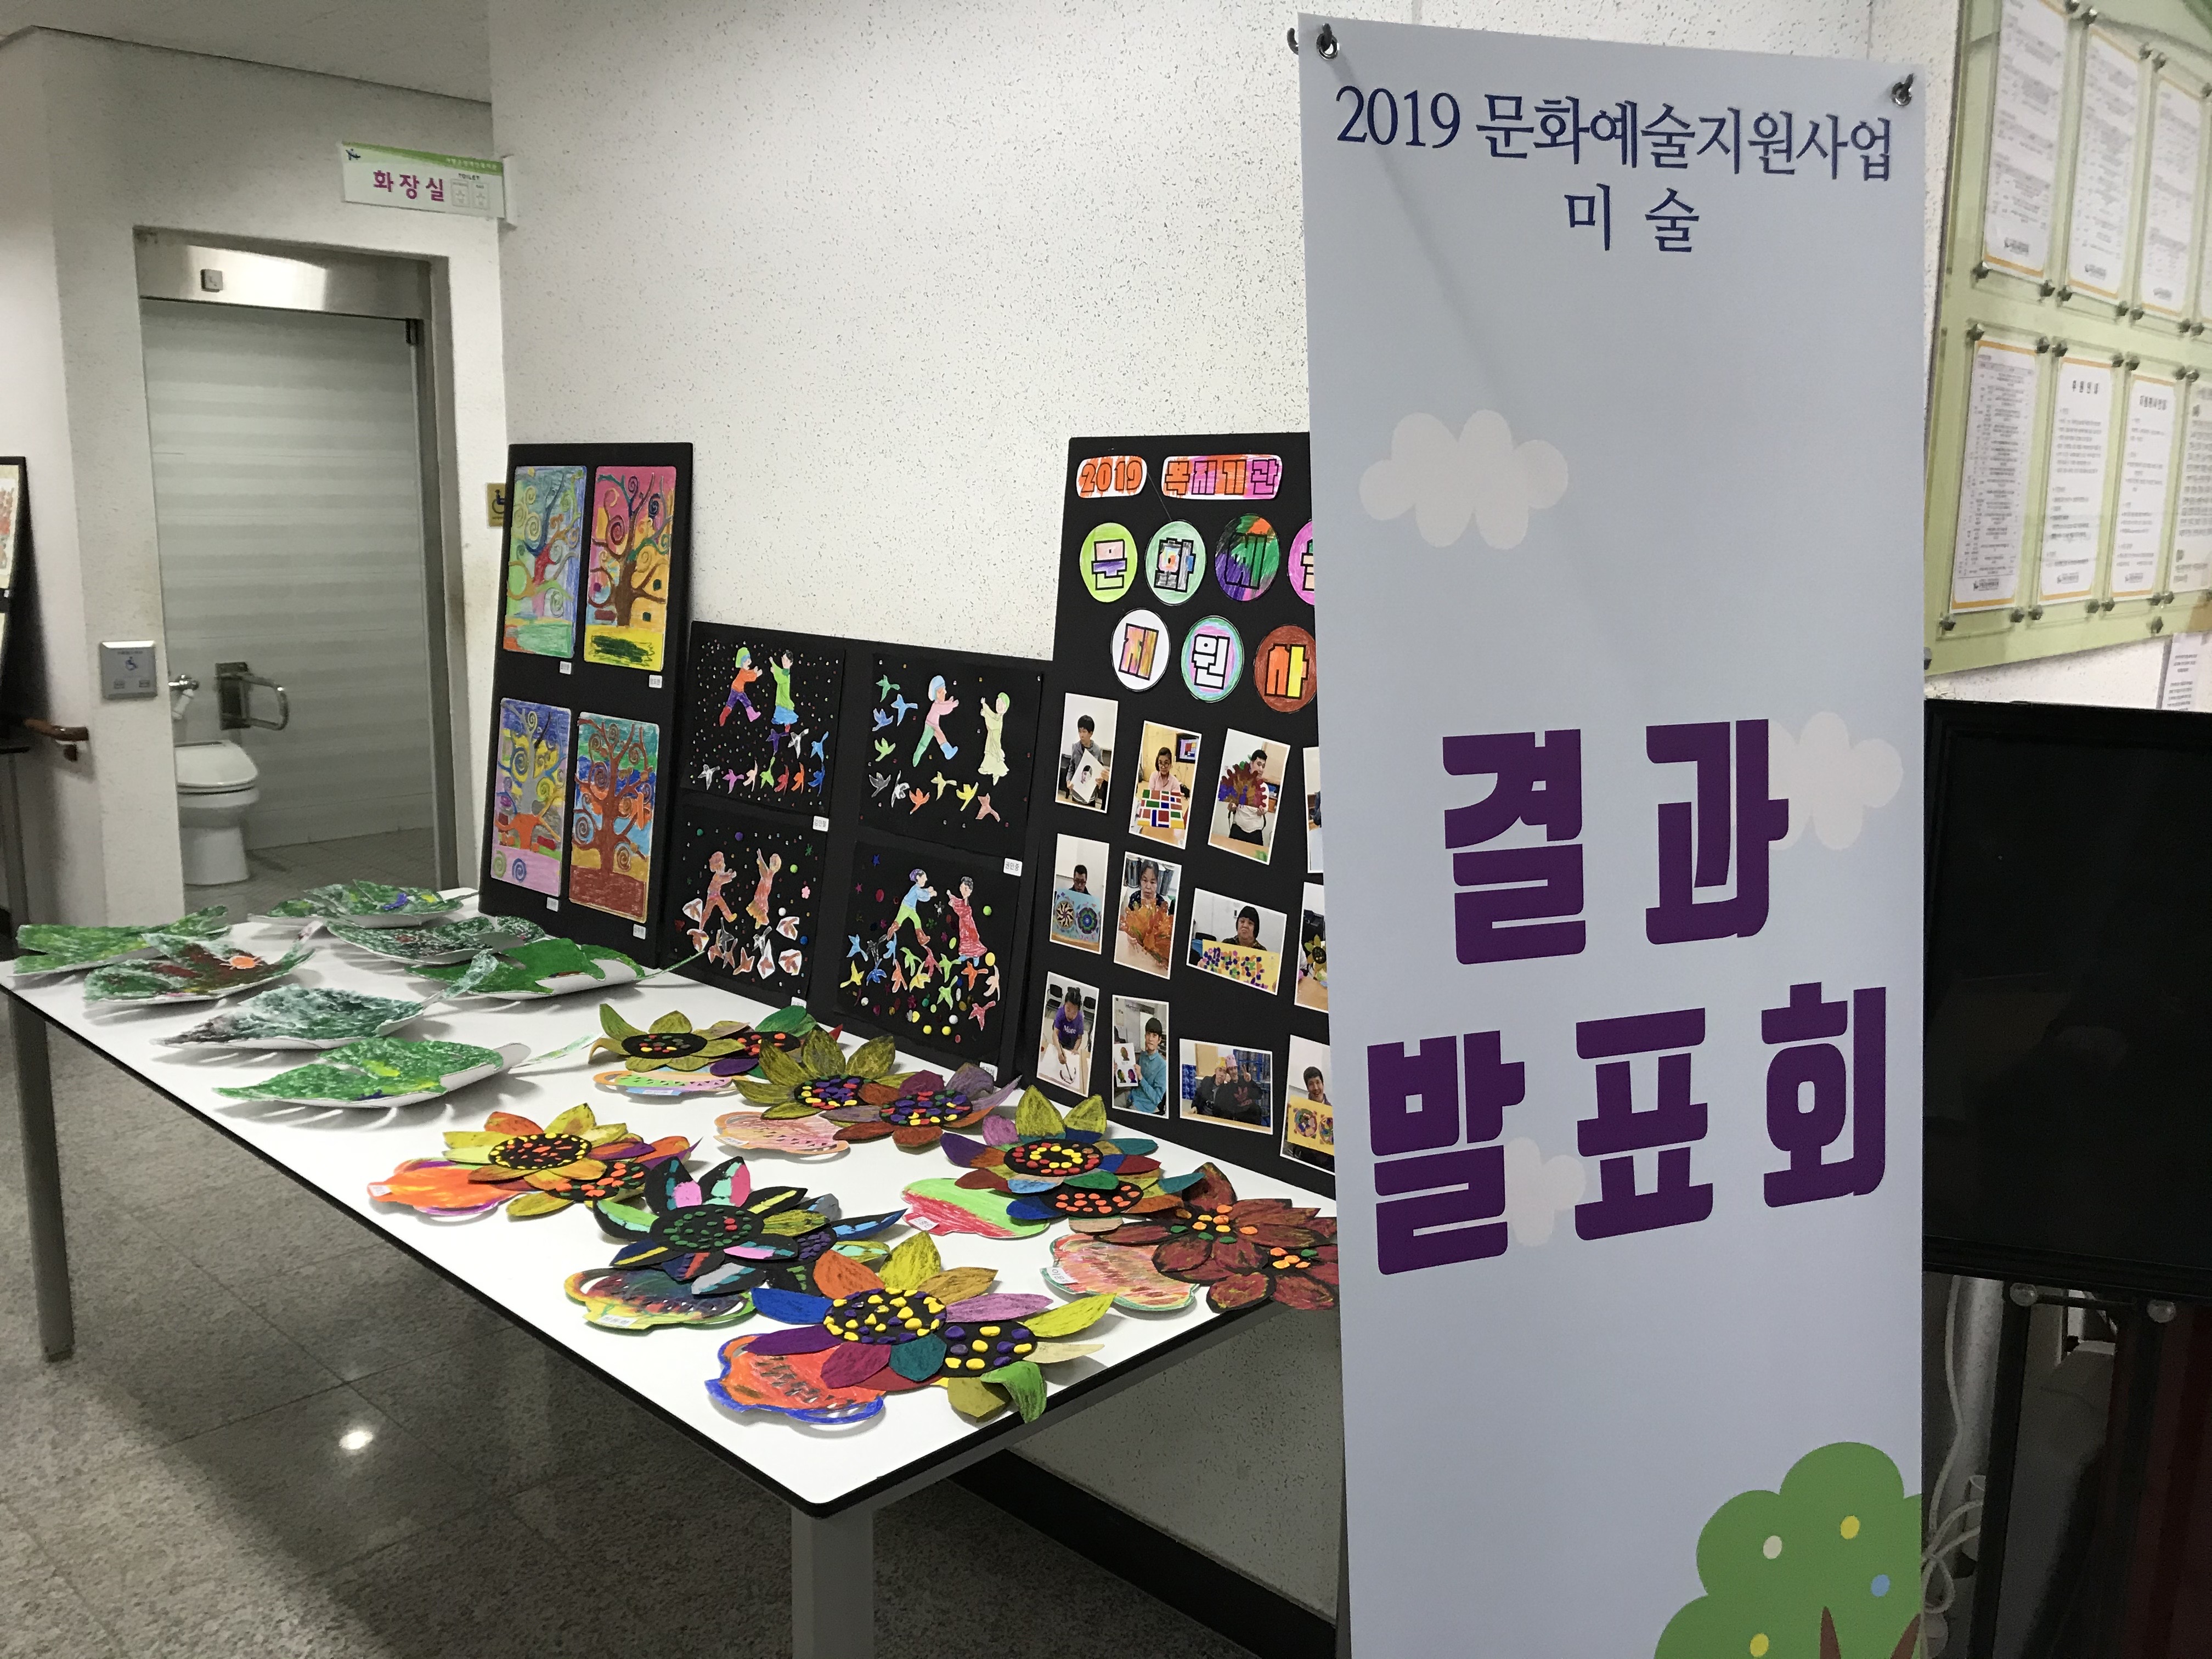 한국장애인복지관협회에서 지원 받아 2019년 3월 ~ 11월 까지 진행된 이번 사업은 참가하신 분들의 예술감각을 자유롭게 표현  하고 다양한 소재를 사용하여 각 회기 마다 새로운 미술 작품을 만들어 가는 프로그램입니다.